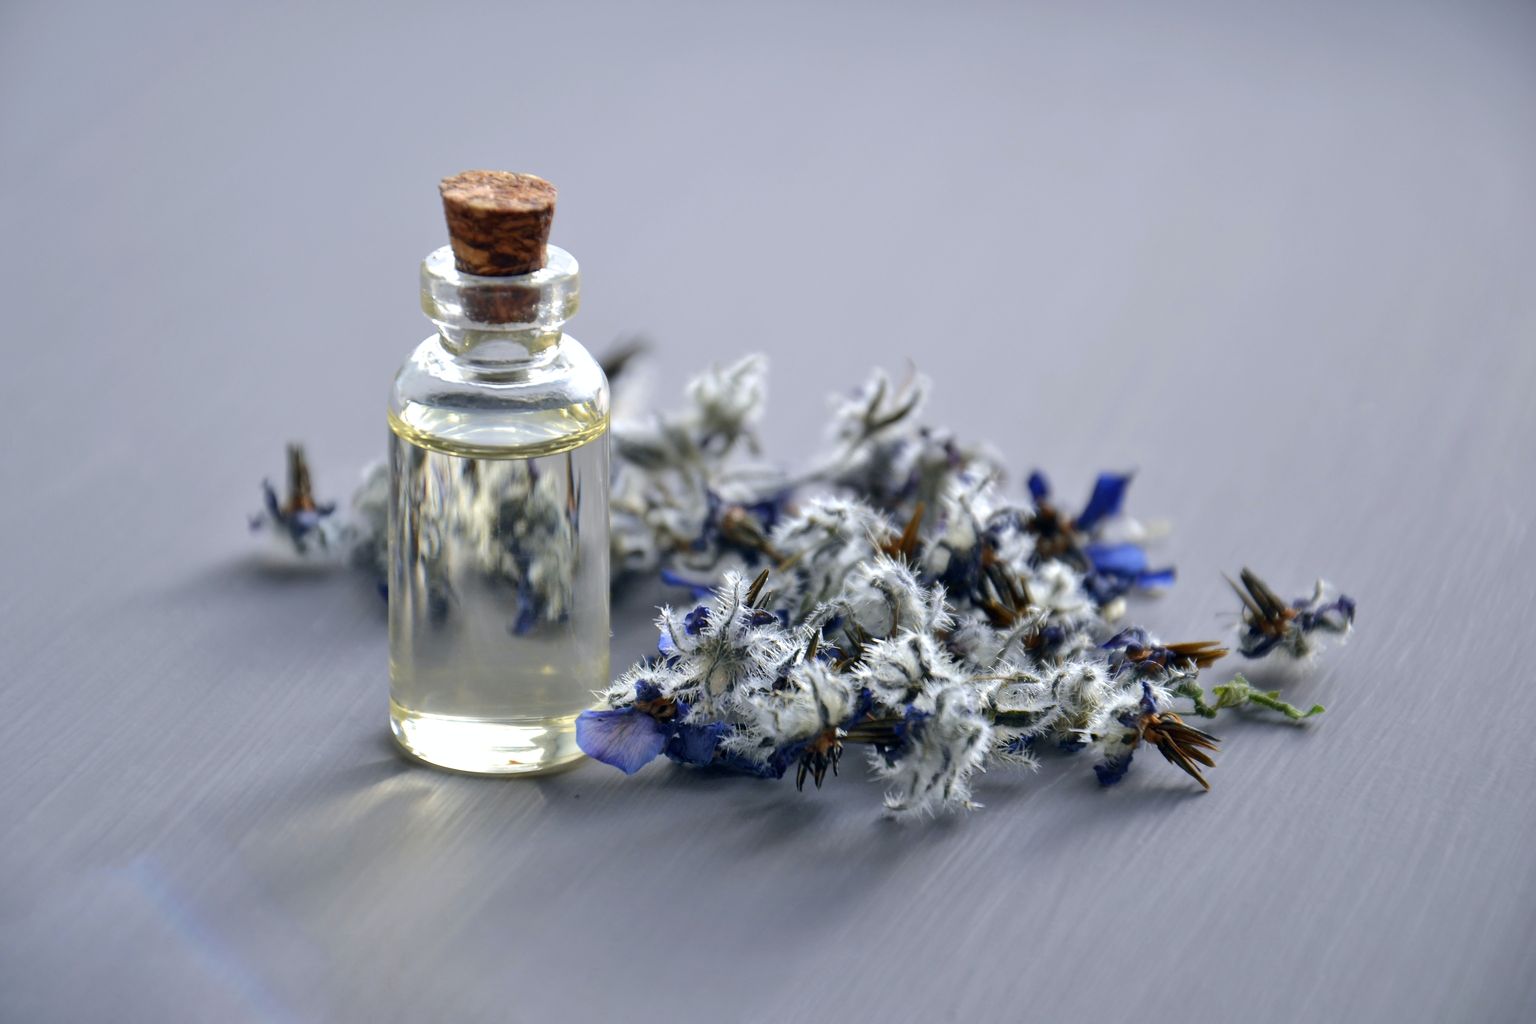 Blüten mit kleiner Glasflasche. Drinnen ist ein aromatisches Öl.